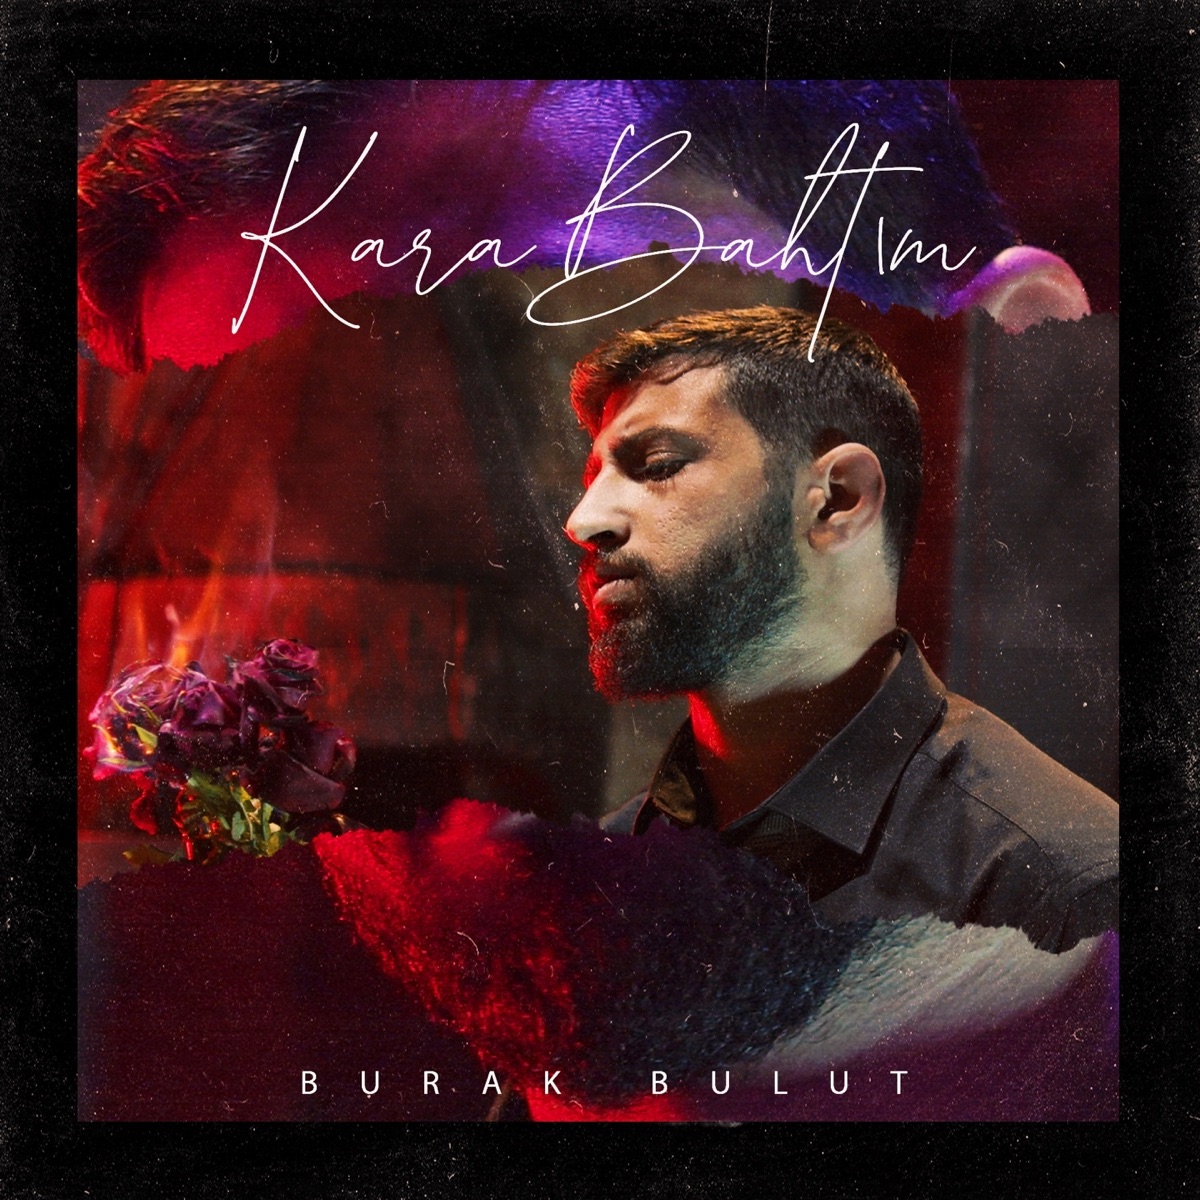 Kafama Sıkasım Var - Single - Album by Burak Bulut - Apple Music